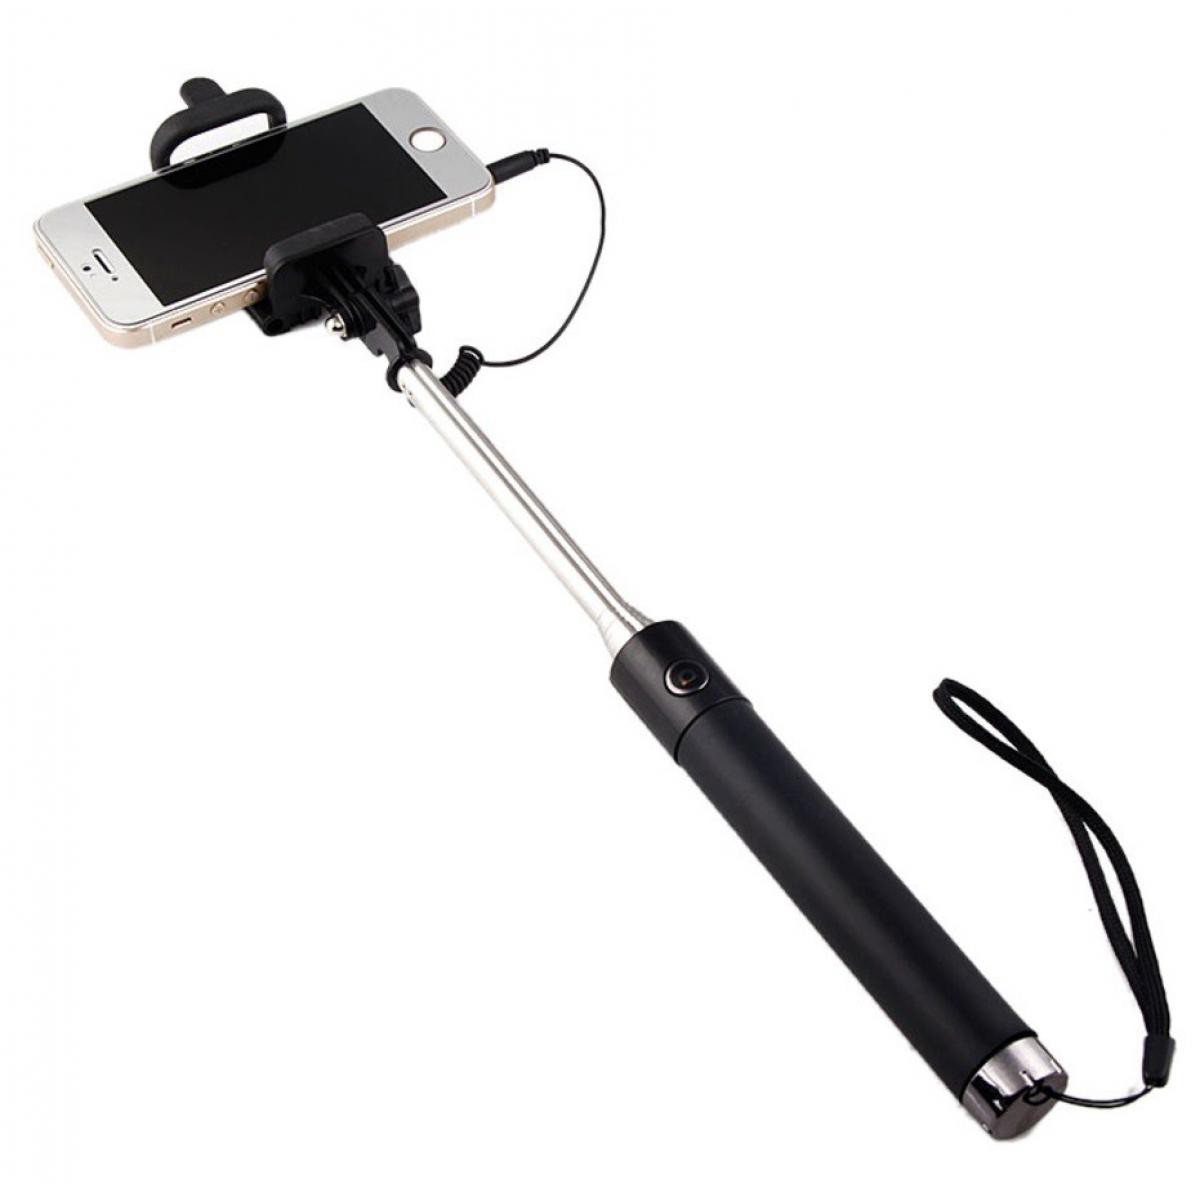 Shot - Selfie Stick Metal pour HUAWEI Mate 20 Smartphone Perche Android IOS Reglable Bouton Photo Cable Jack Noir - Autres accessoires smartphone